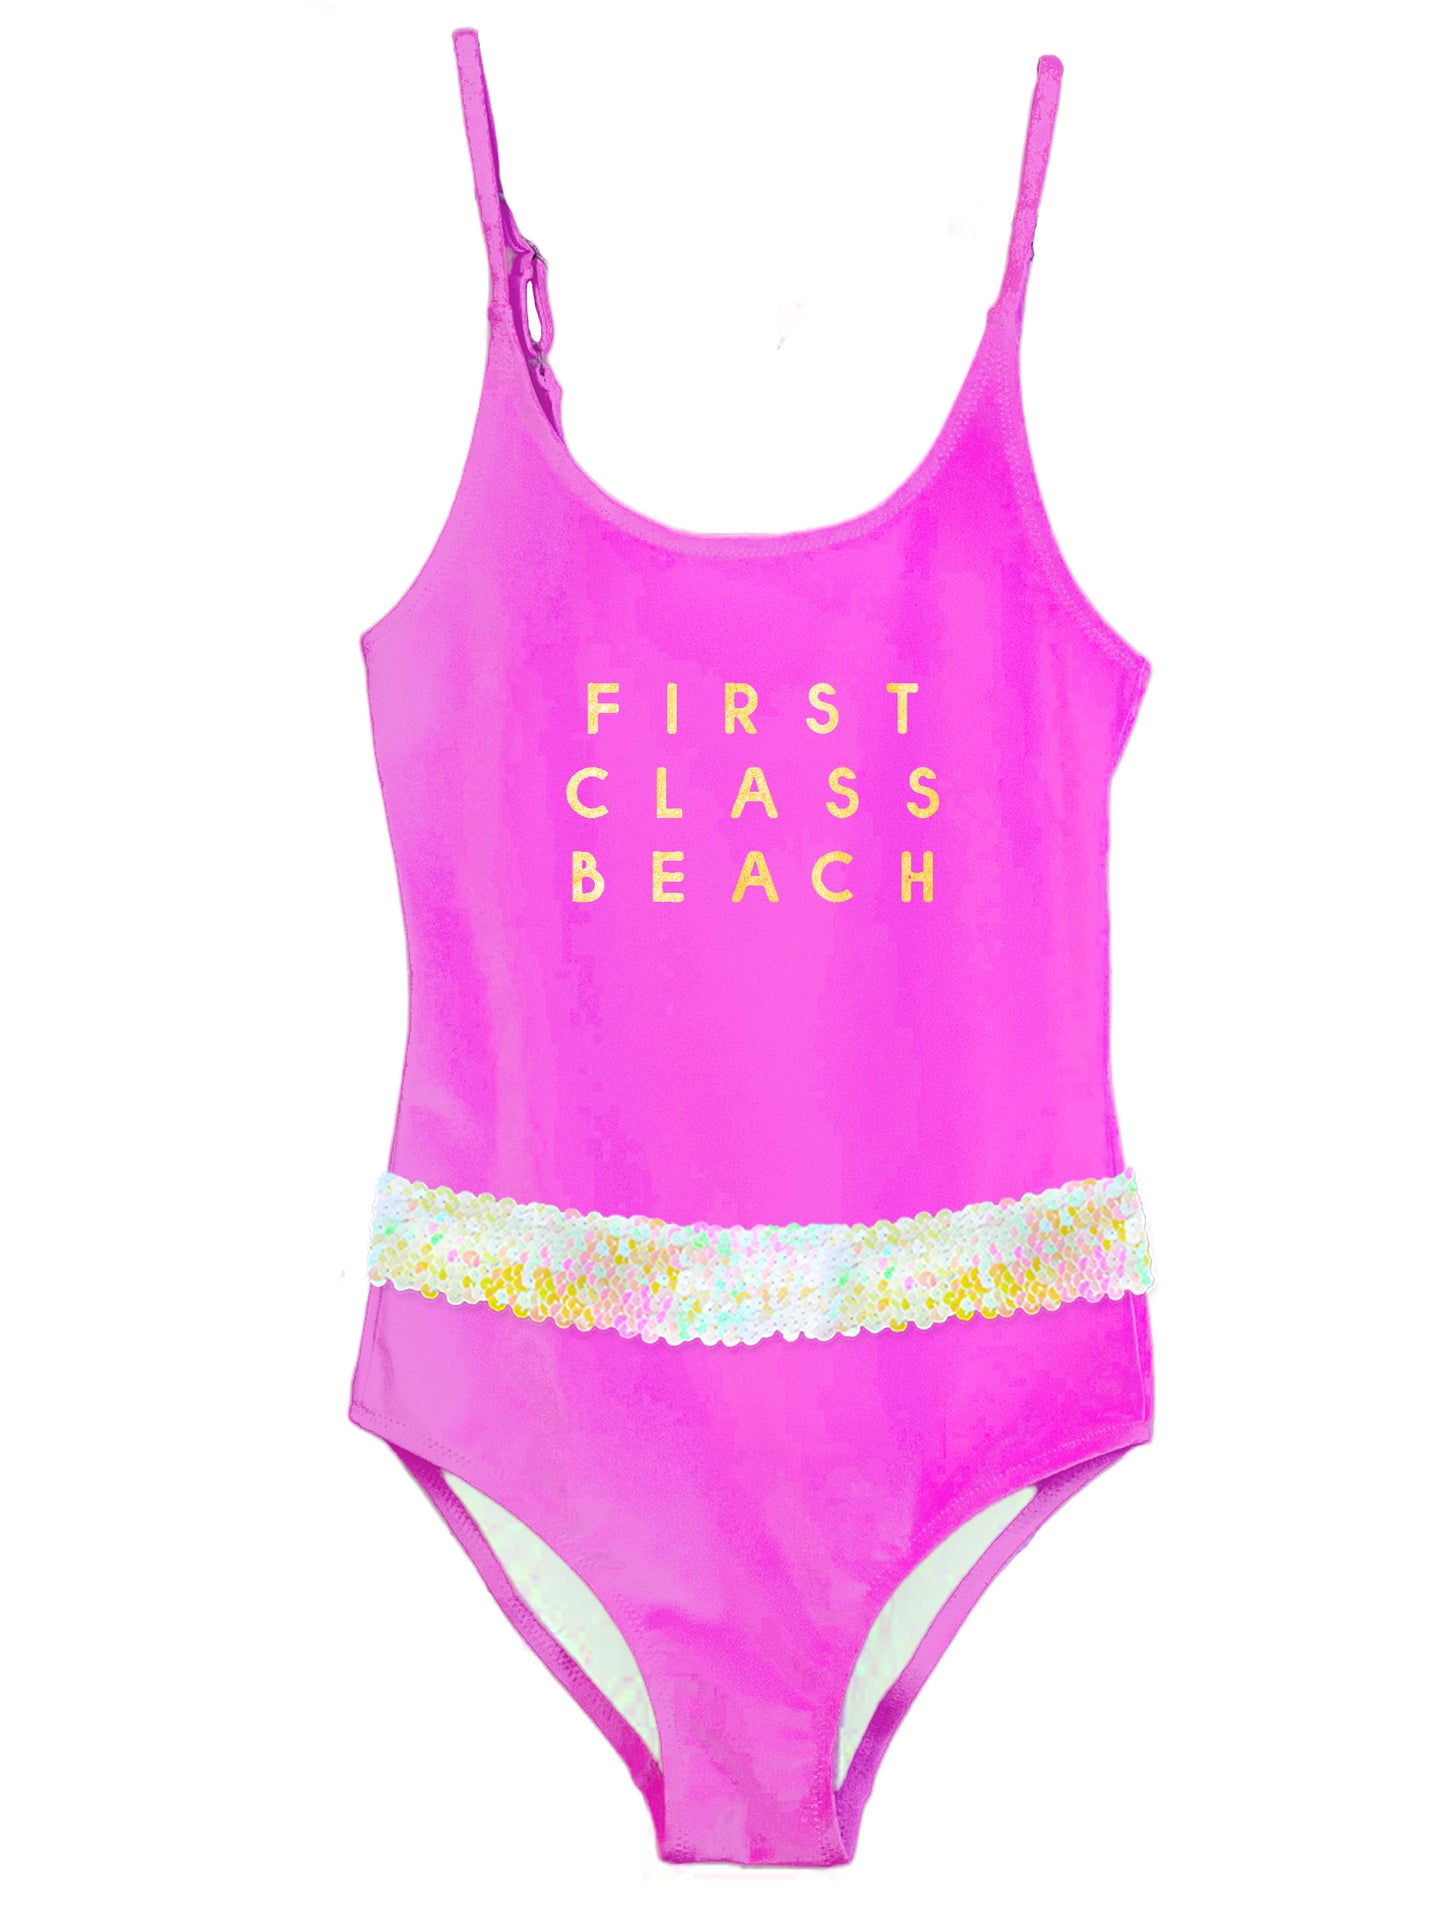 beachwear for girls, hot pink swimwear for girls, pink beachwear for girls, pink bathing suit for girls